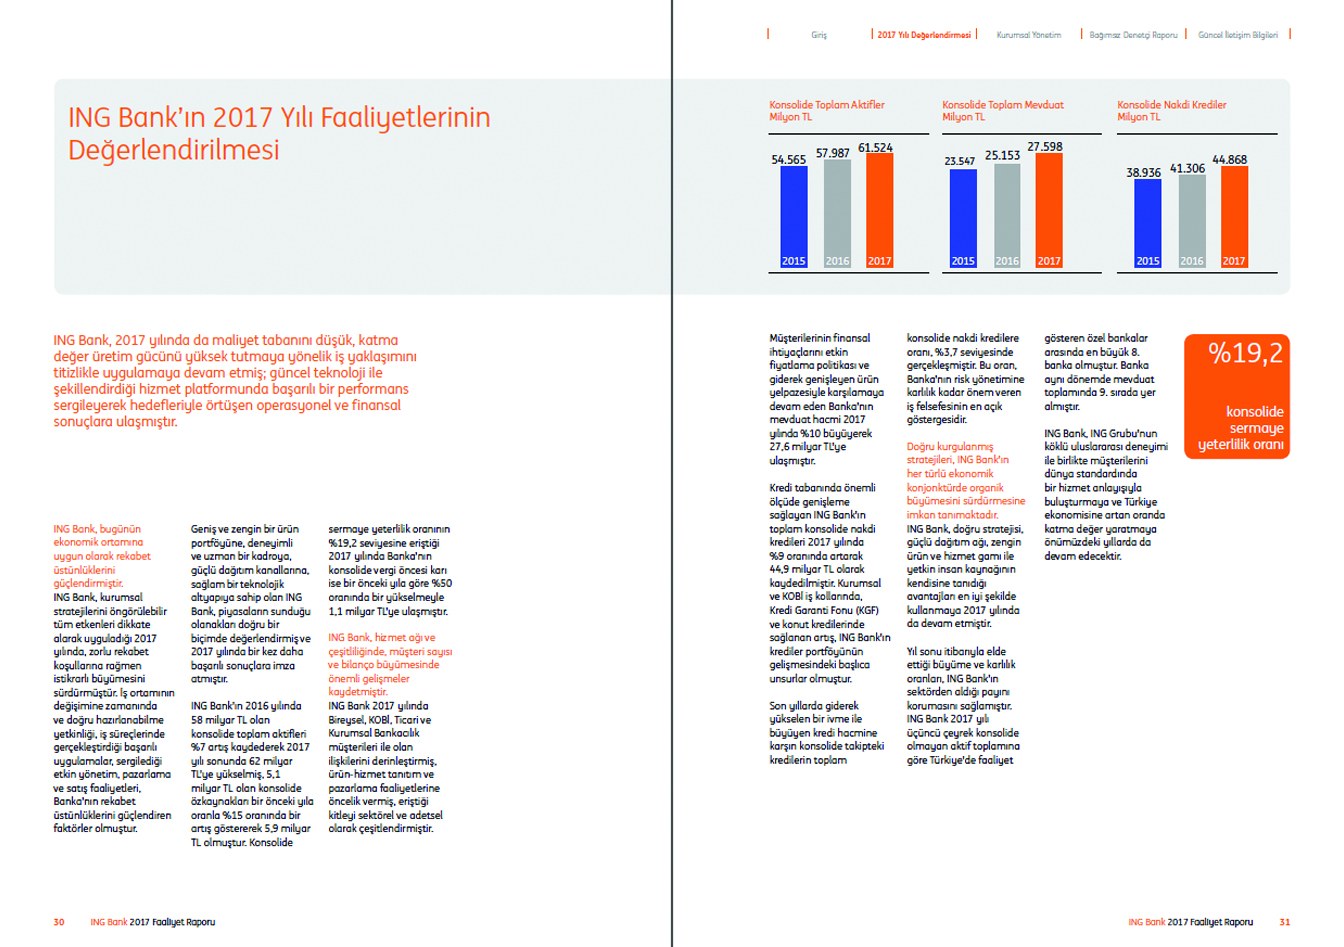 ING BANK / 2017 Faaliyet Raporu / 2017 Annual Report